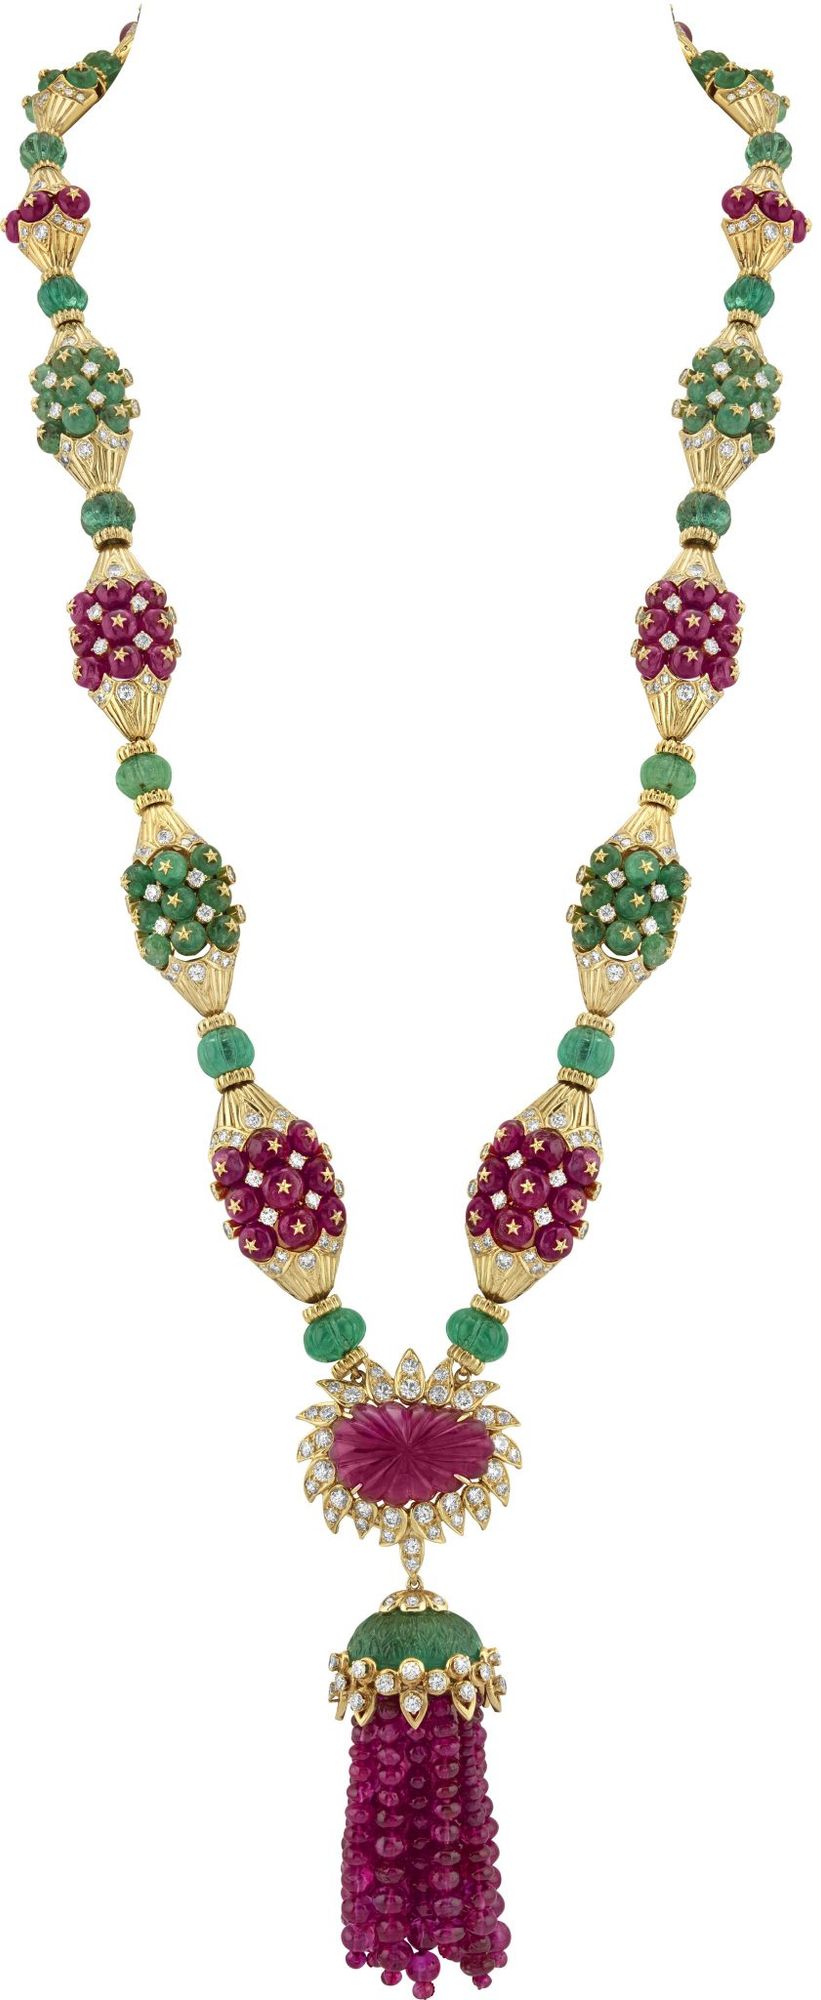 Ожерелье с резными рубинами и изумрудами из коллекции Heritage от Van Cleef & Arpels, 1970-е годы